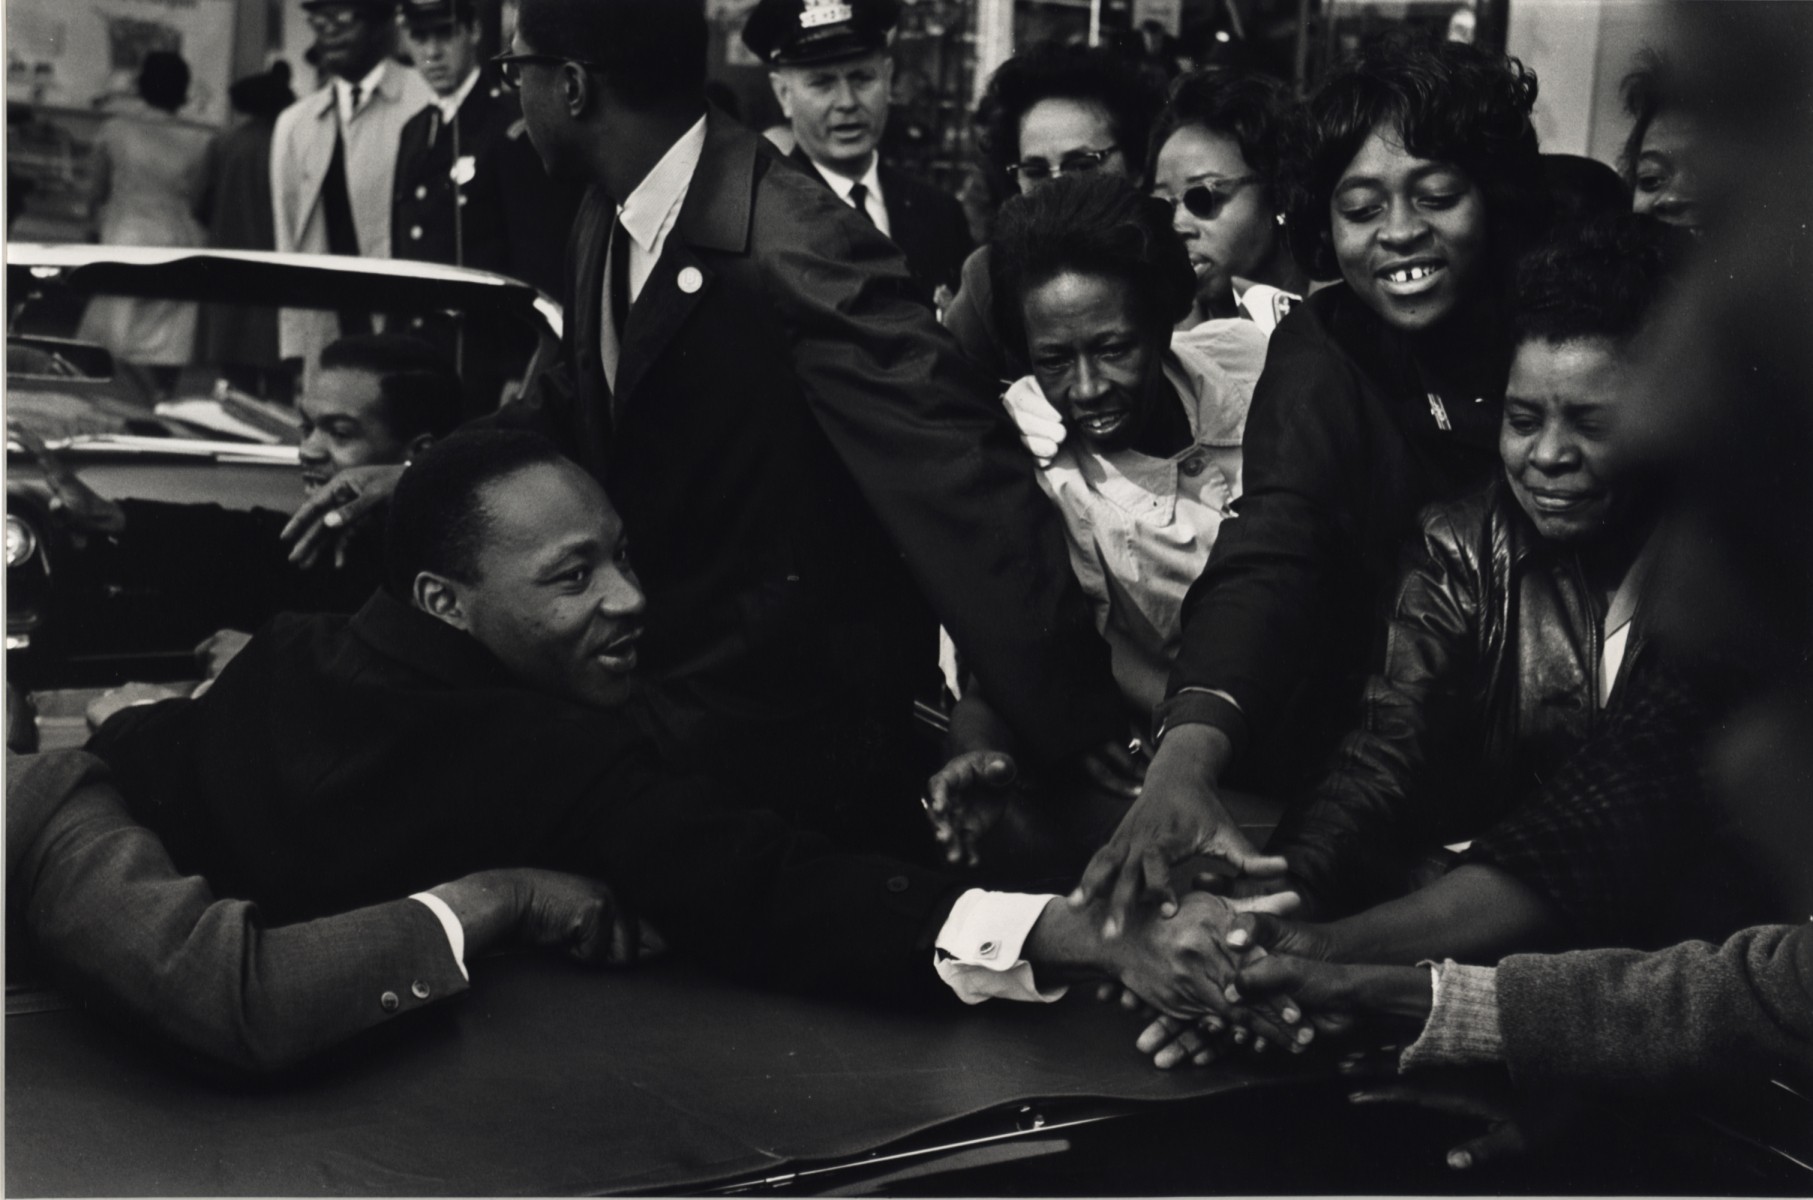 Возвращение Мартина Лютера Кинга младшего после получения Нобелевской премии мира, Балтимор, Мэриленд, 1964. Фотограф Леонард Фрид